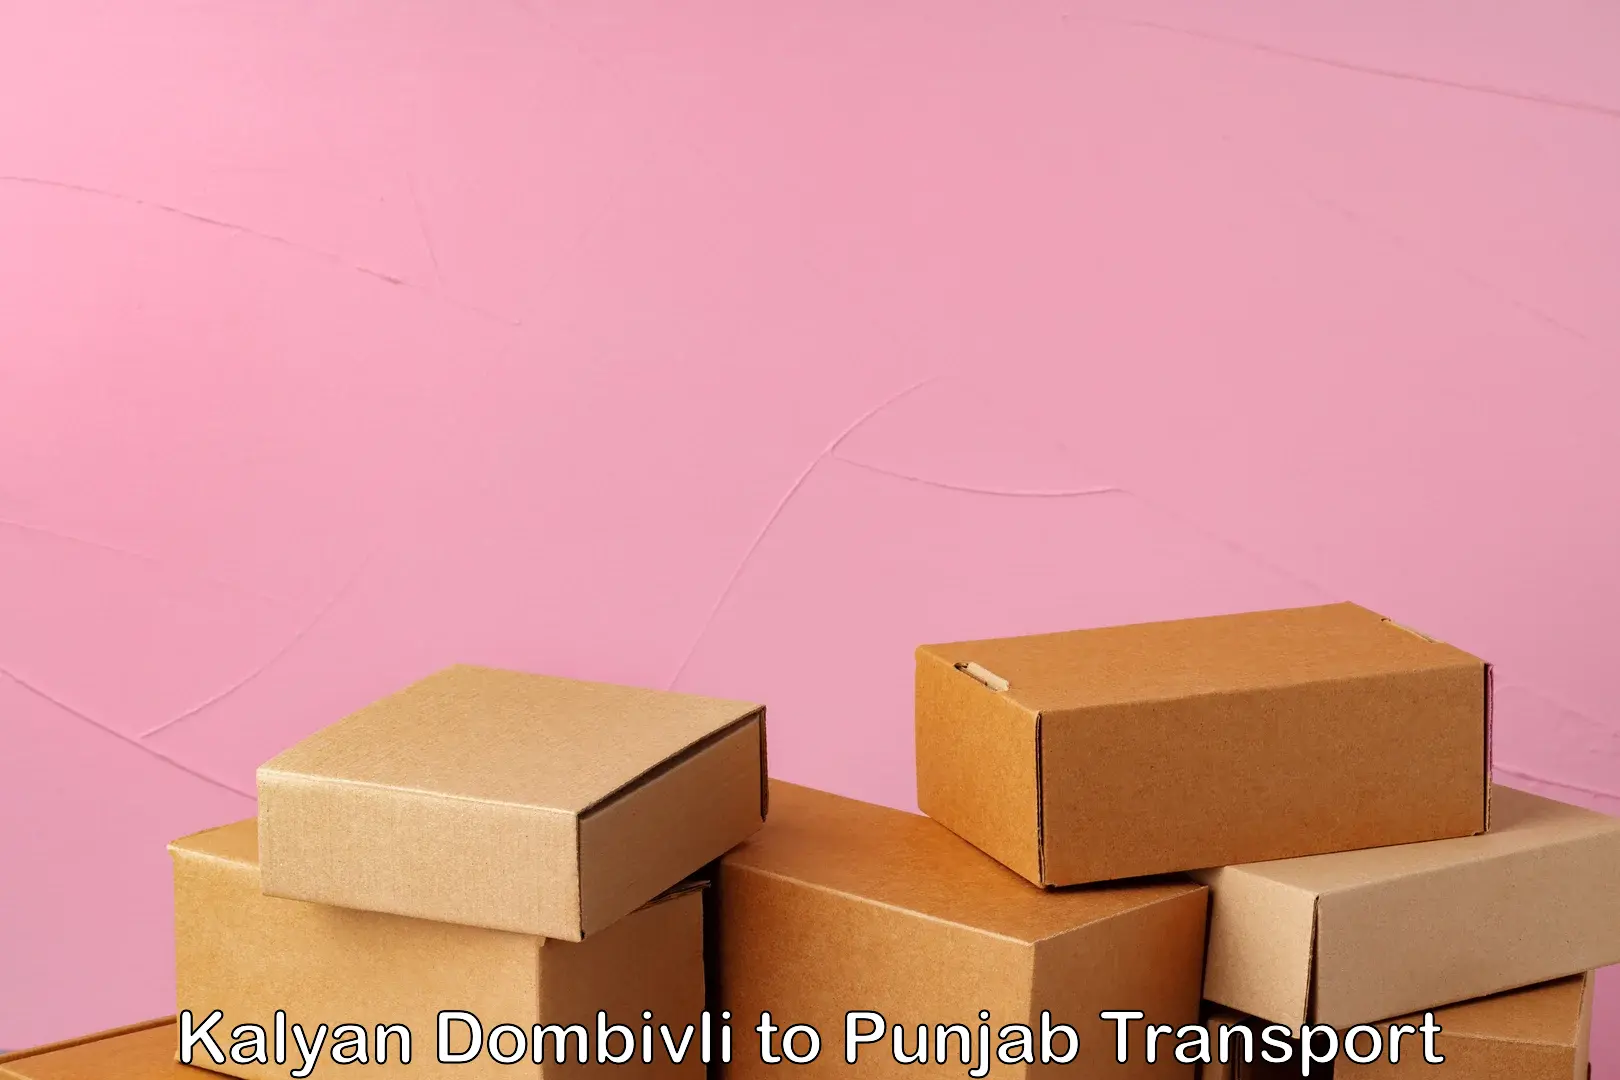 Transport in sharing Kalyan Dombivli to Punjab